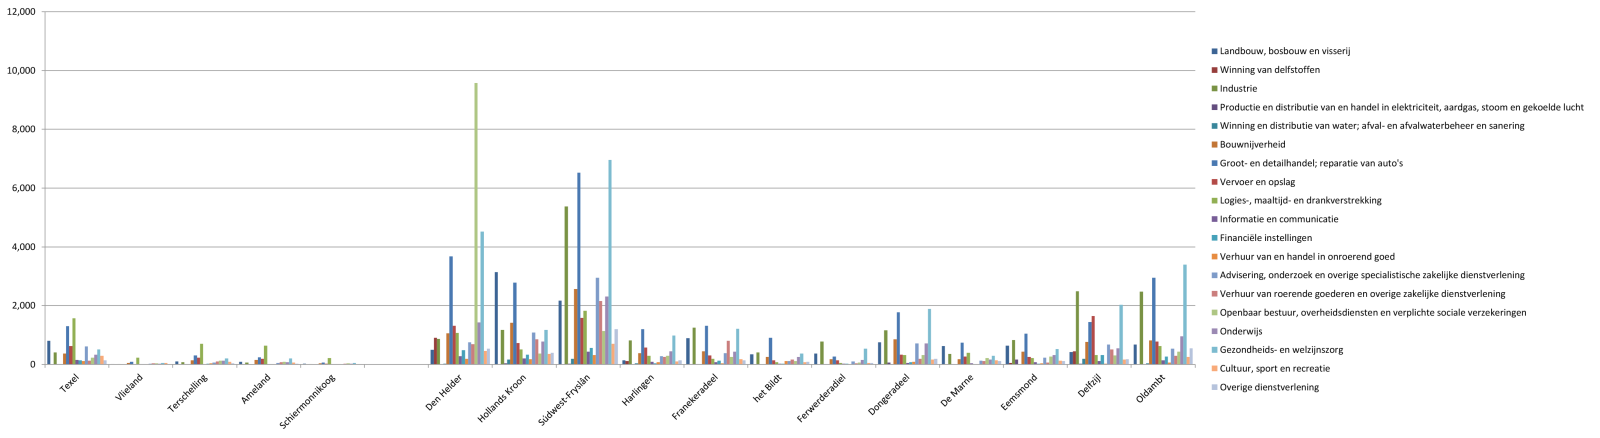 Banen in kernsectoren, per gemeente, 2013